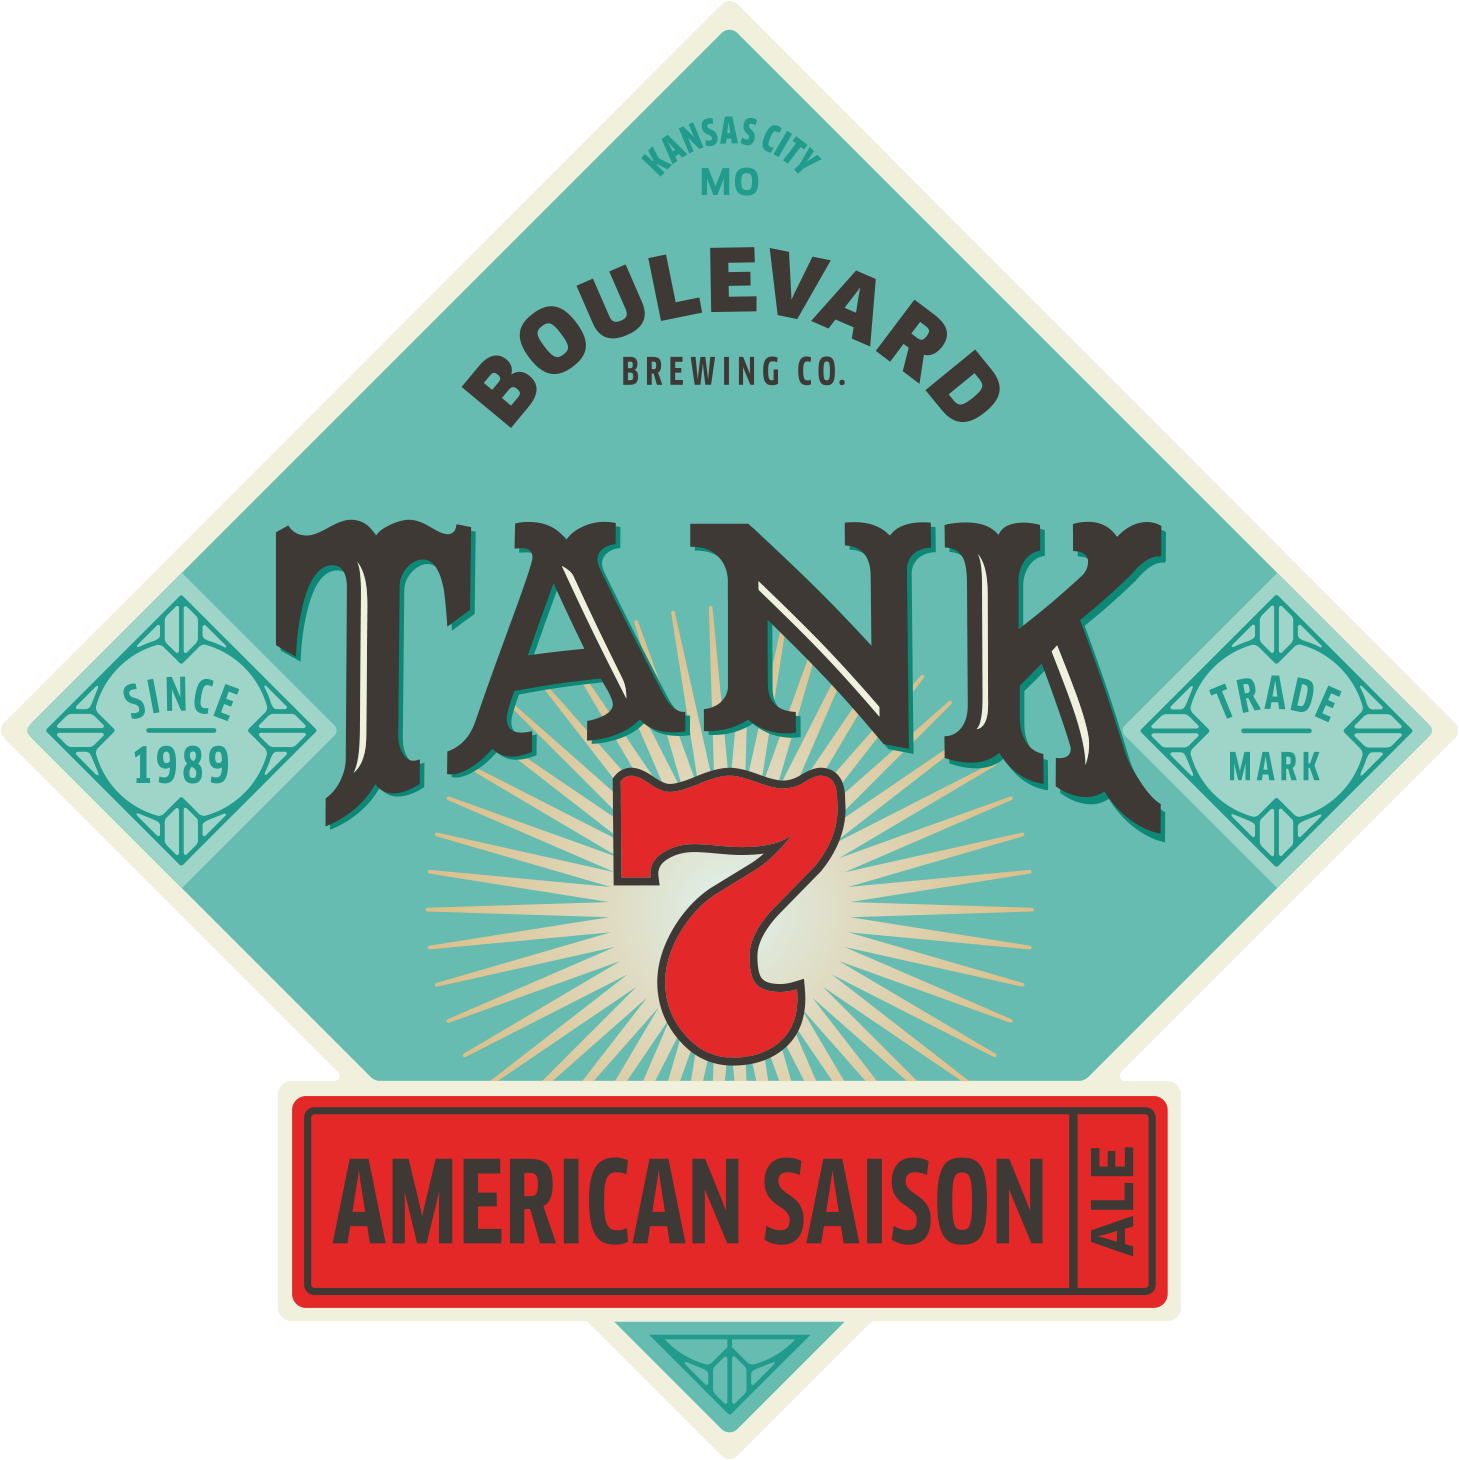 Boulevard Tank 7 Farmhouse Ale - 12oz/6pk (bottles)